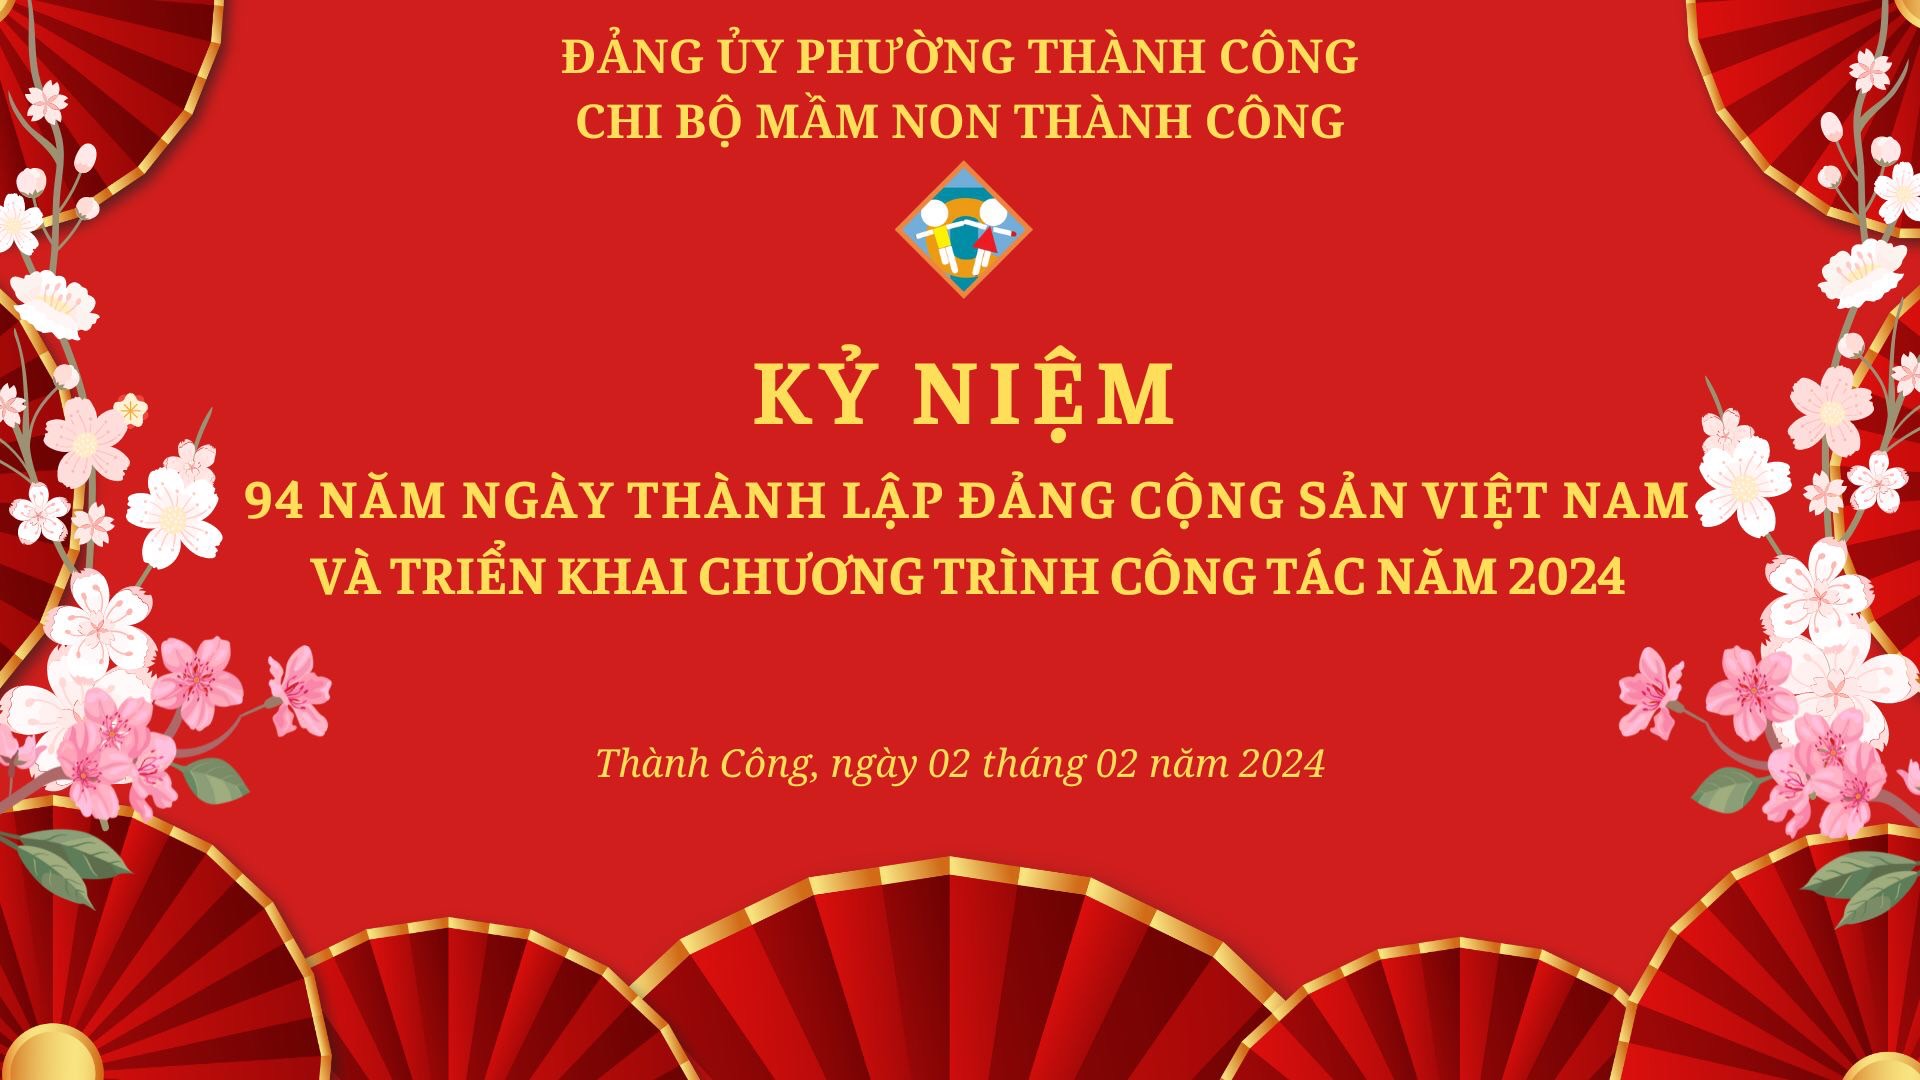 Nhiệt liệt chào mừng kỷ niệm 94 năm thành lập Đảng cộng sản Việt Nam (03/02/1930)-(03/02/2024)